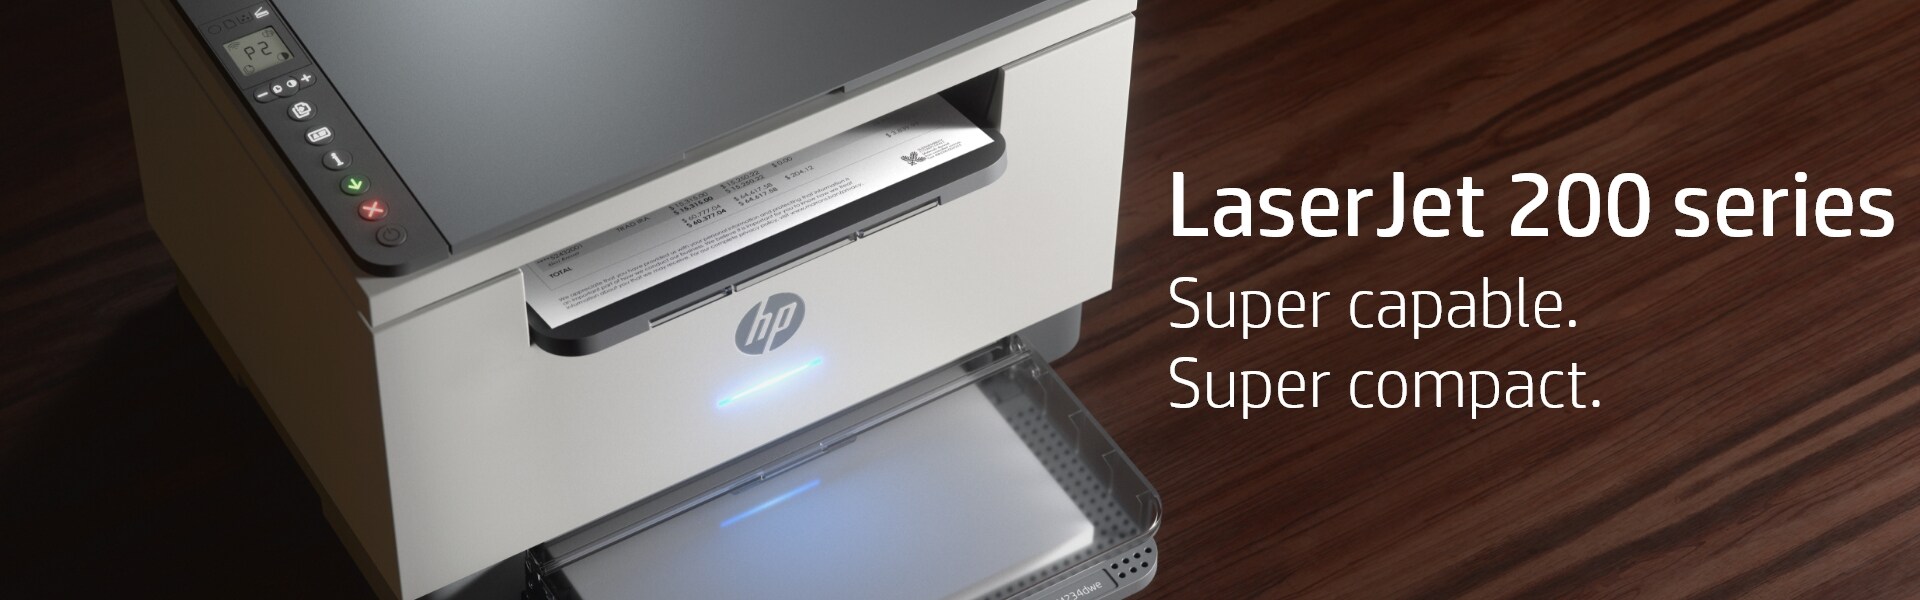 HP LaserJet MFP M234dwe Certified Refurbished Printer w/ bonus 6 months  Instant Ink toner through HP+